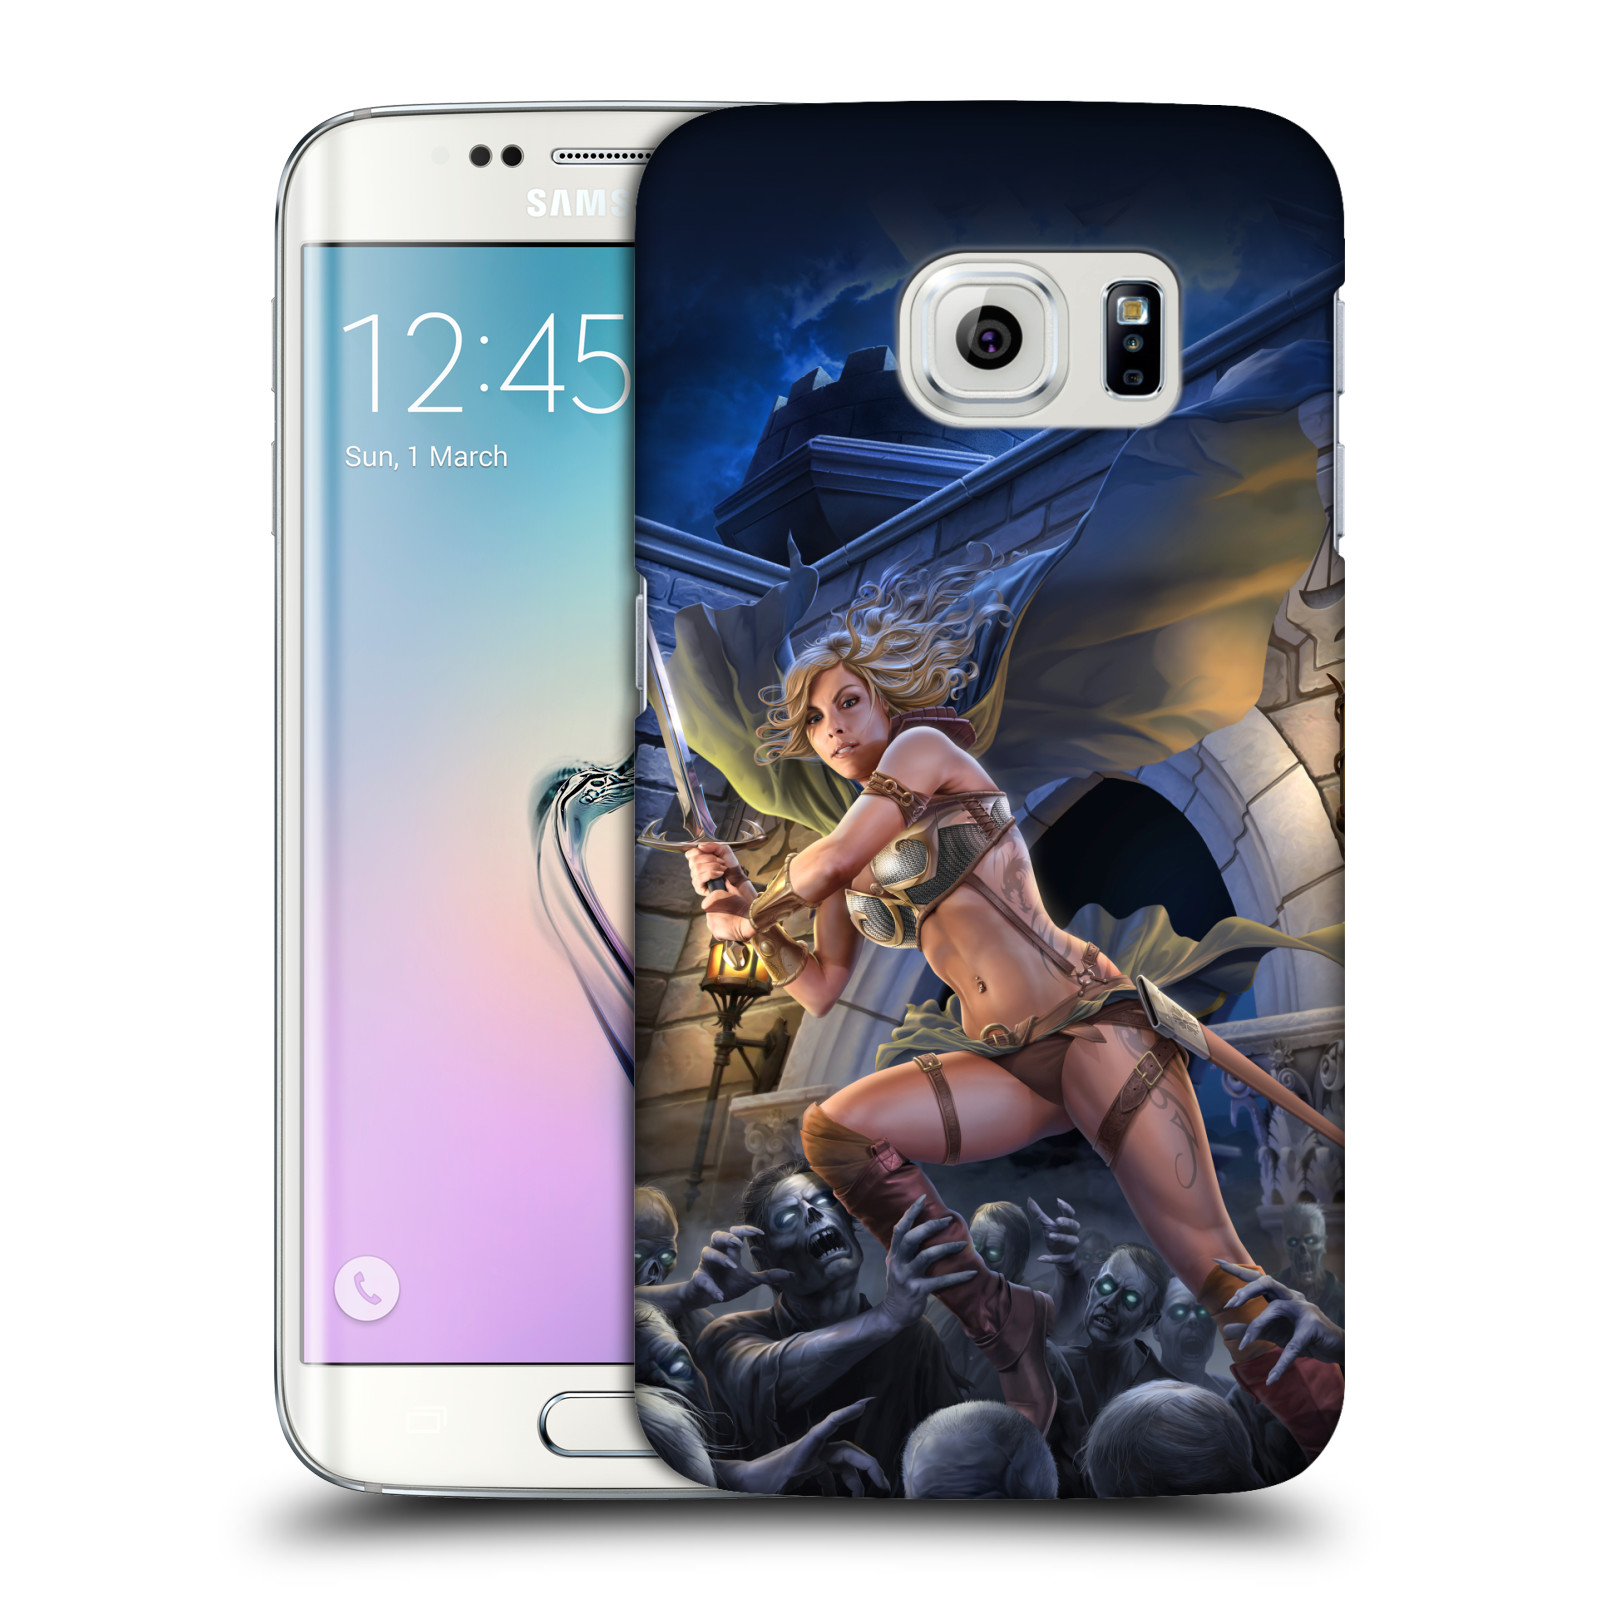 Pouzdro na mobil Samsung Galaxy S6 EDGE - HEAD CASE - Fantasy kresby Tom Wood - Princezna bojovnice a zombies